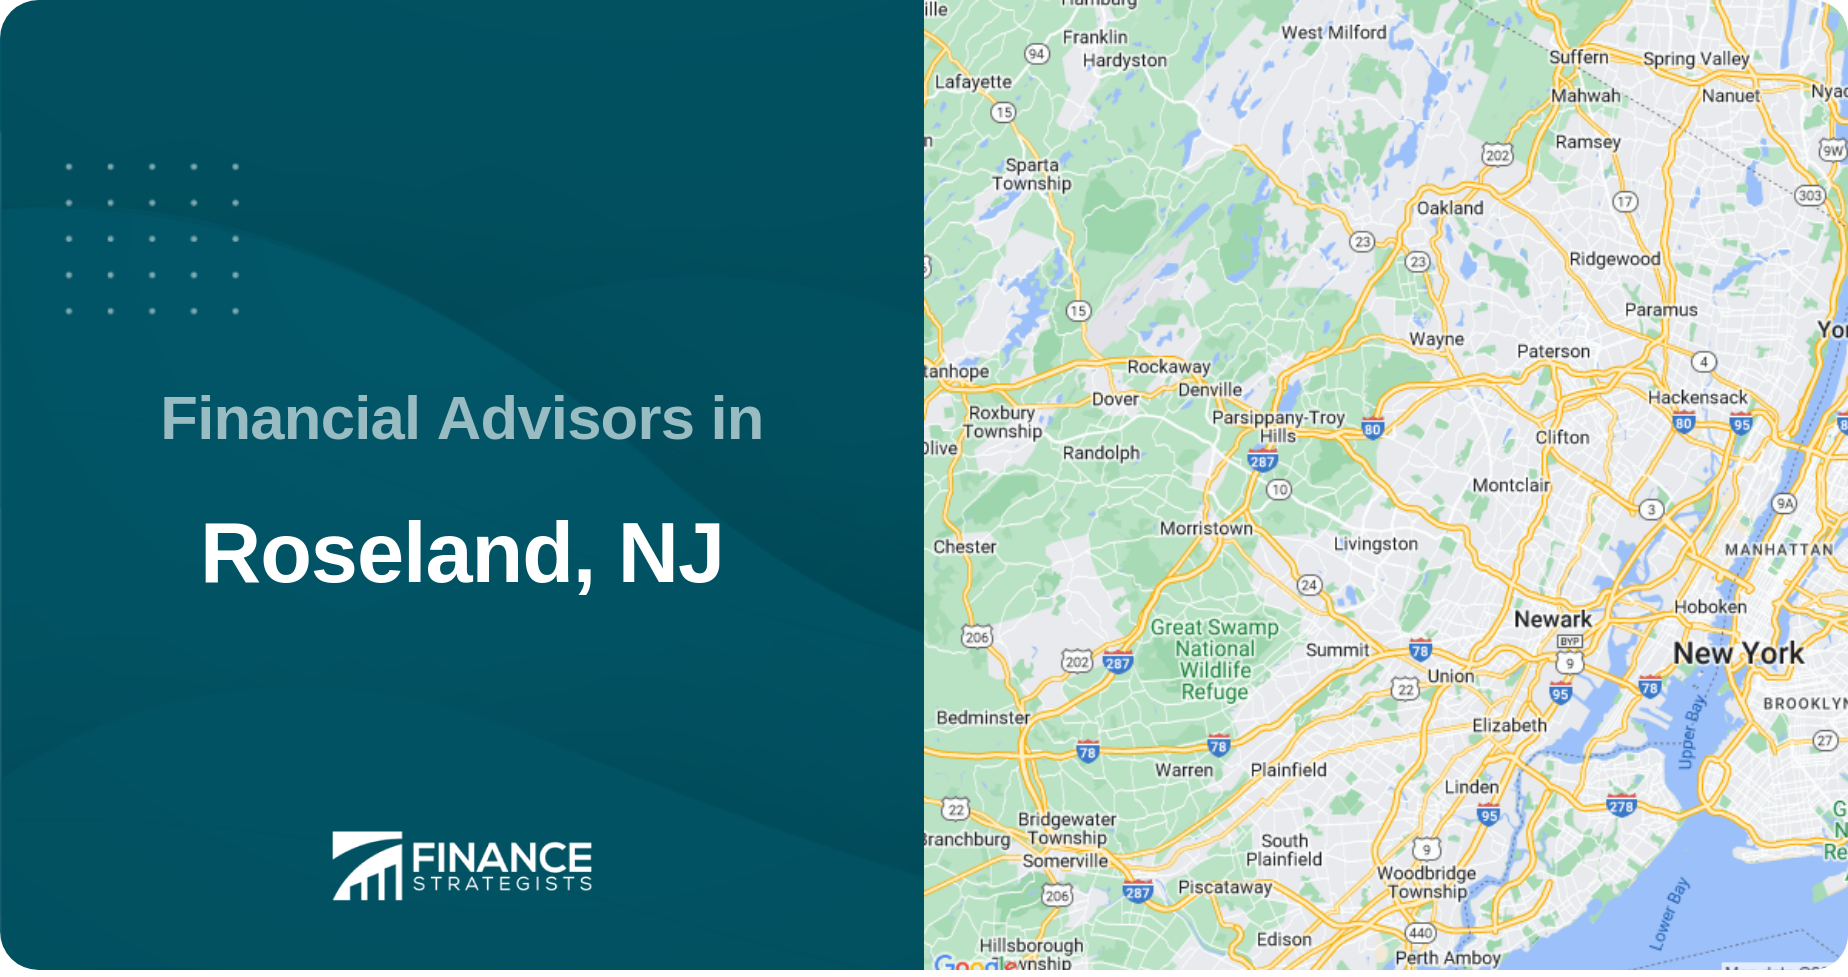 Financial Advisors in Roseland, NJ